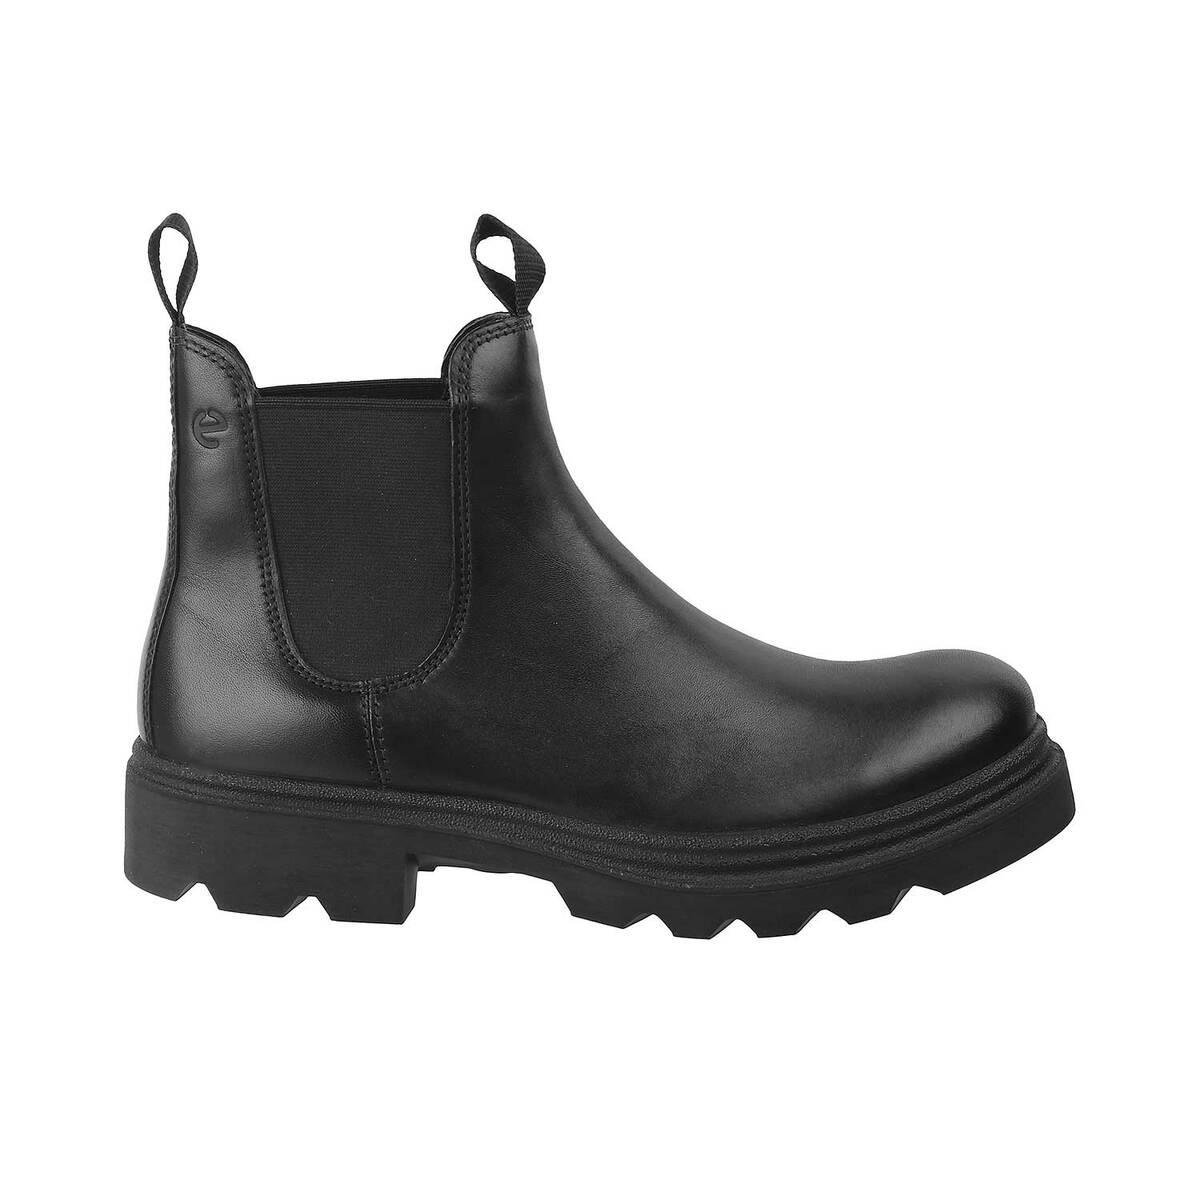 præmedicinering give nudler Buy Men Male Black Casual Boots Online | SKU: 339-214704-11-42-Metro Shoes